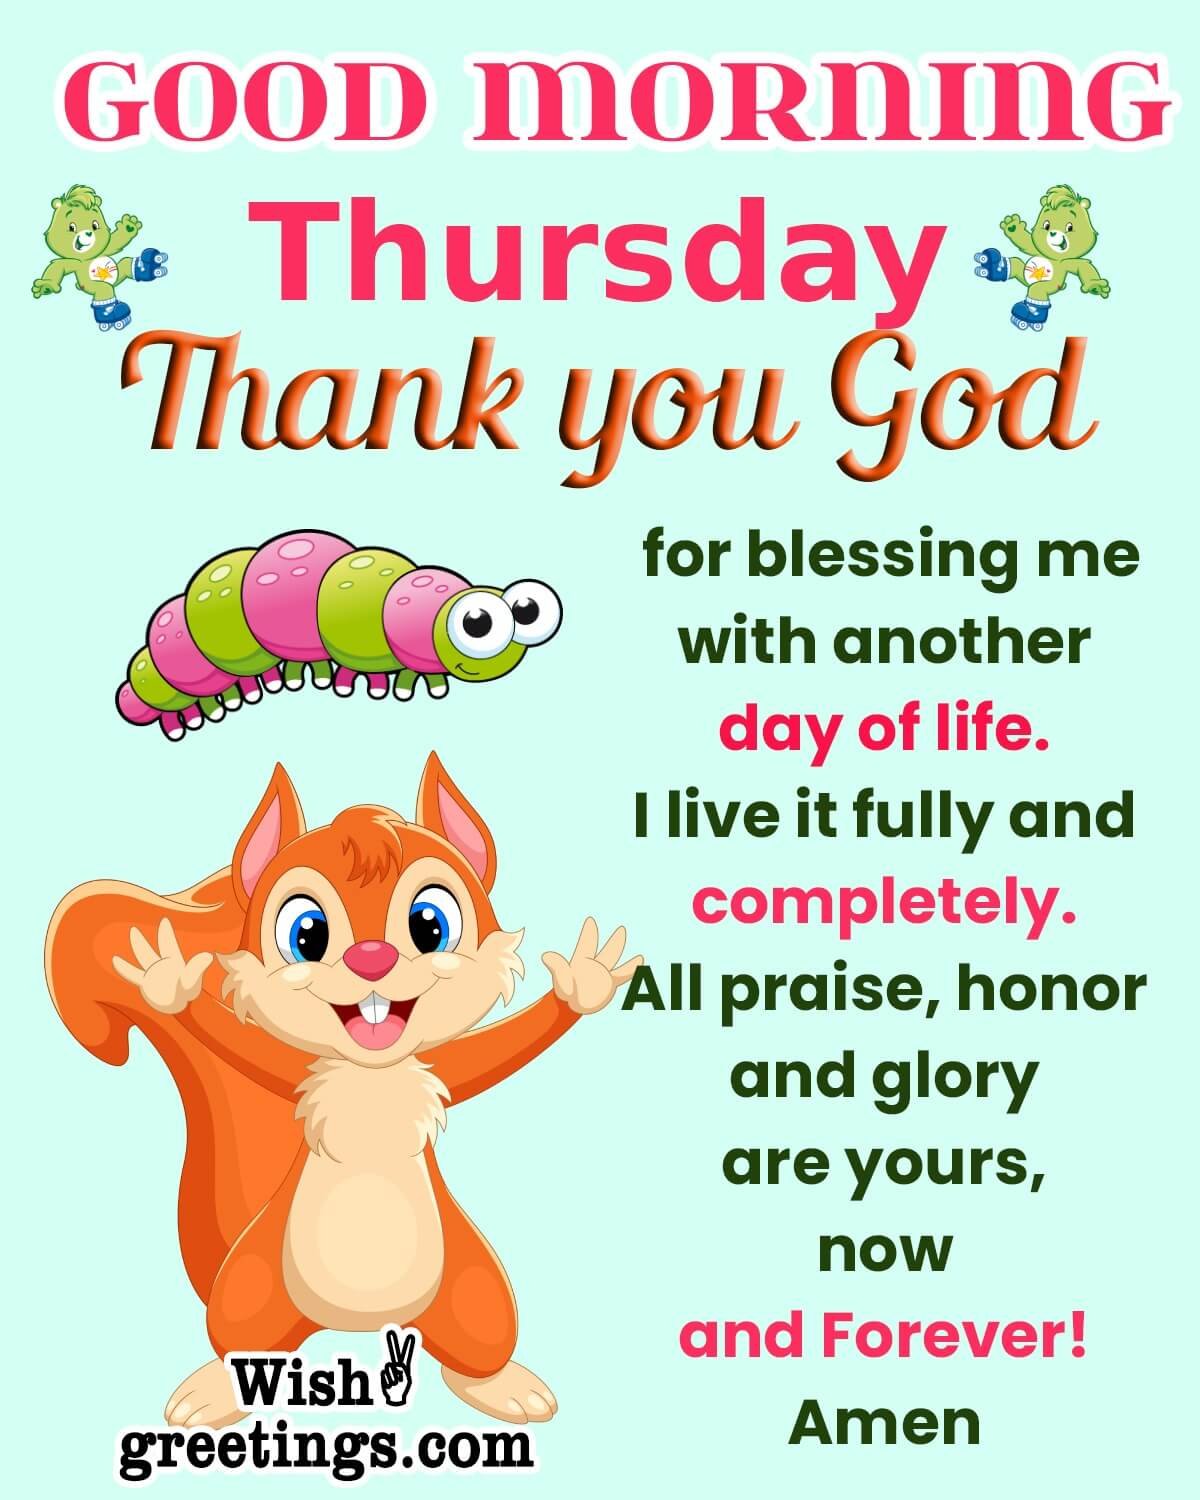 Thursday Thank You God Greeting Image